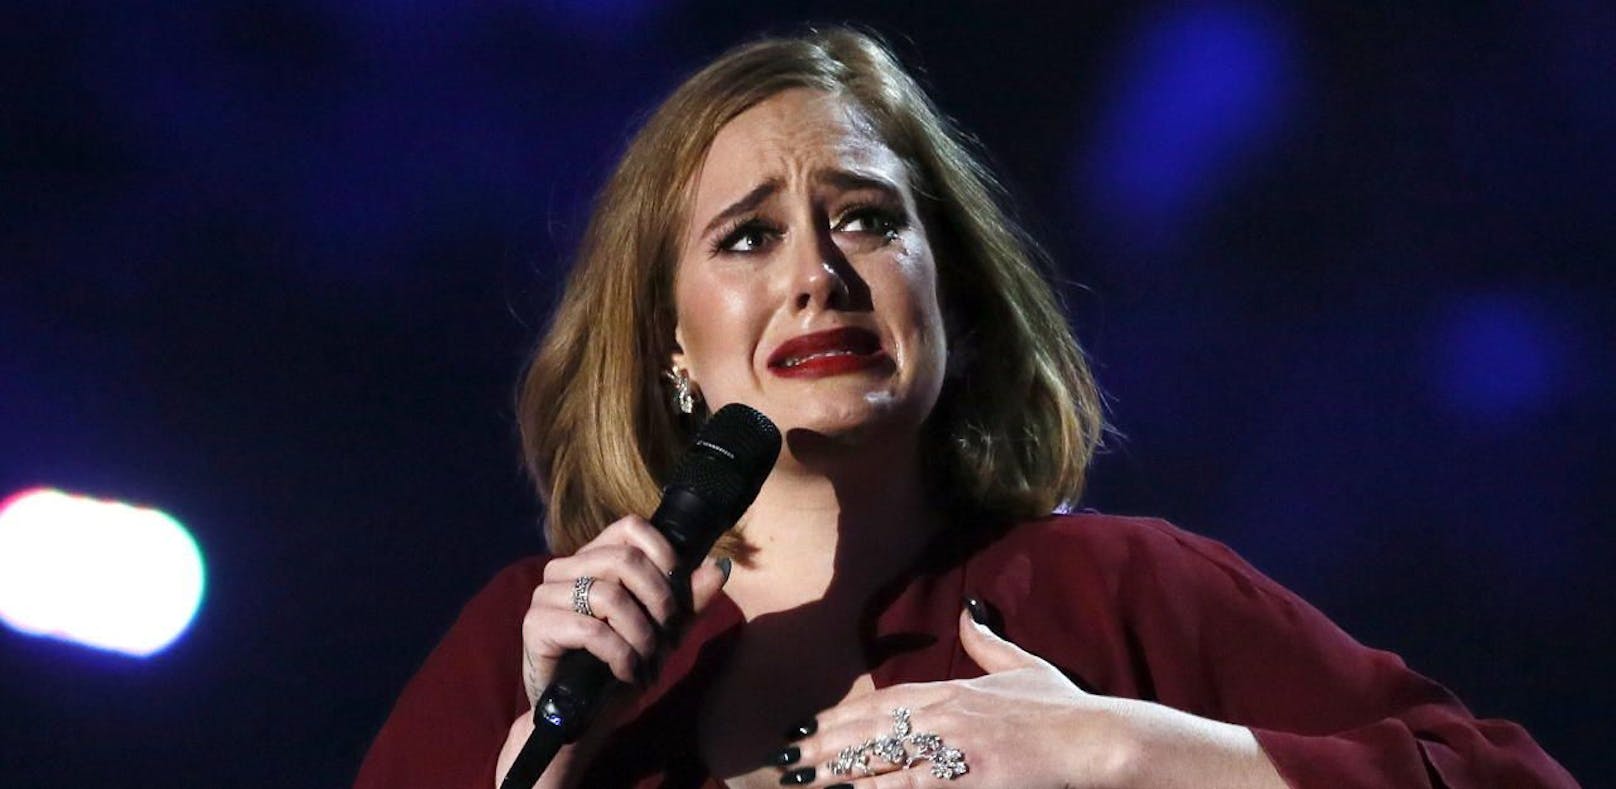 Adele tröstete Opfer von Grenfell Tower-Tragödie